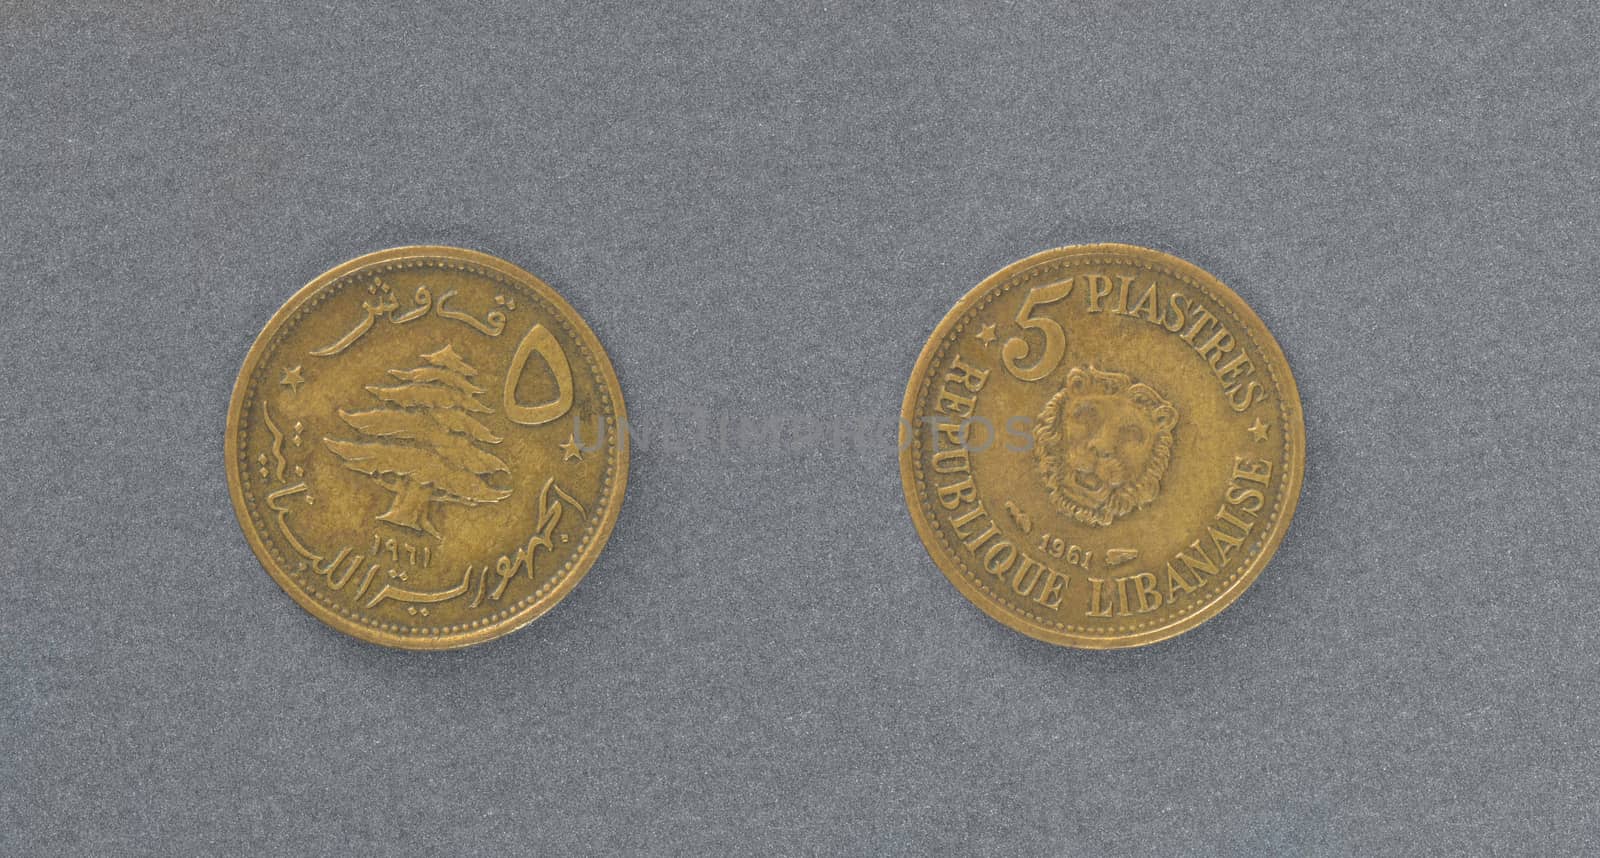 Lebanon brass coin by Vectorex